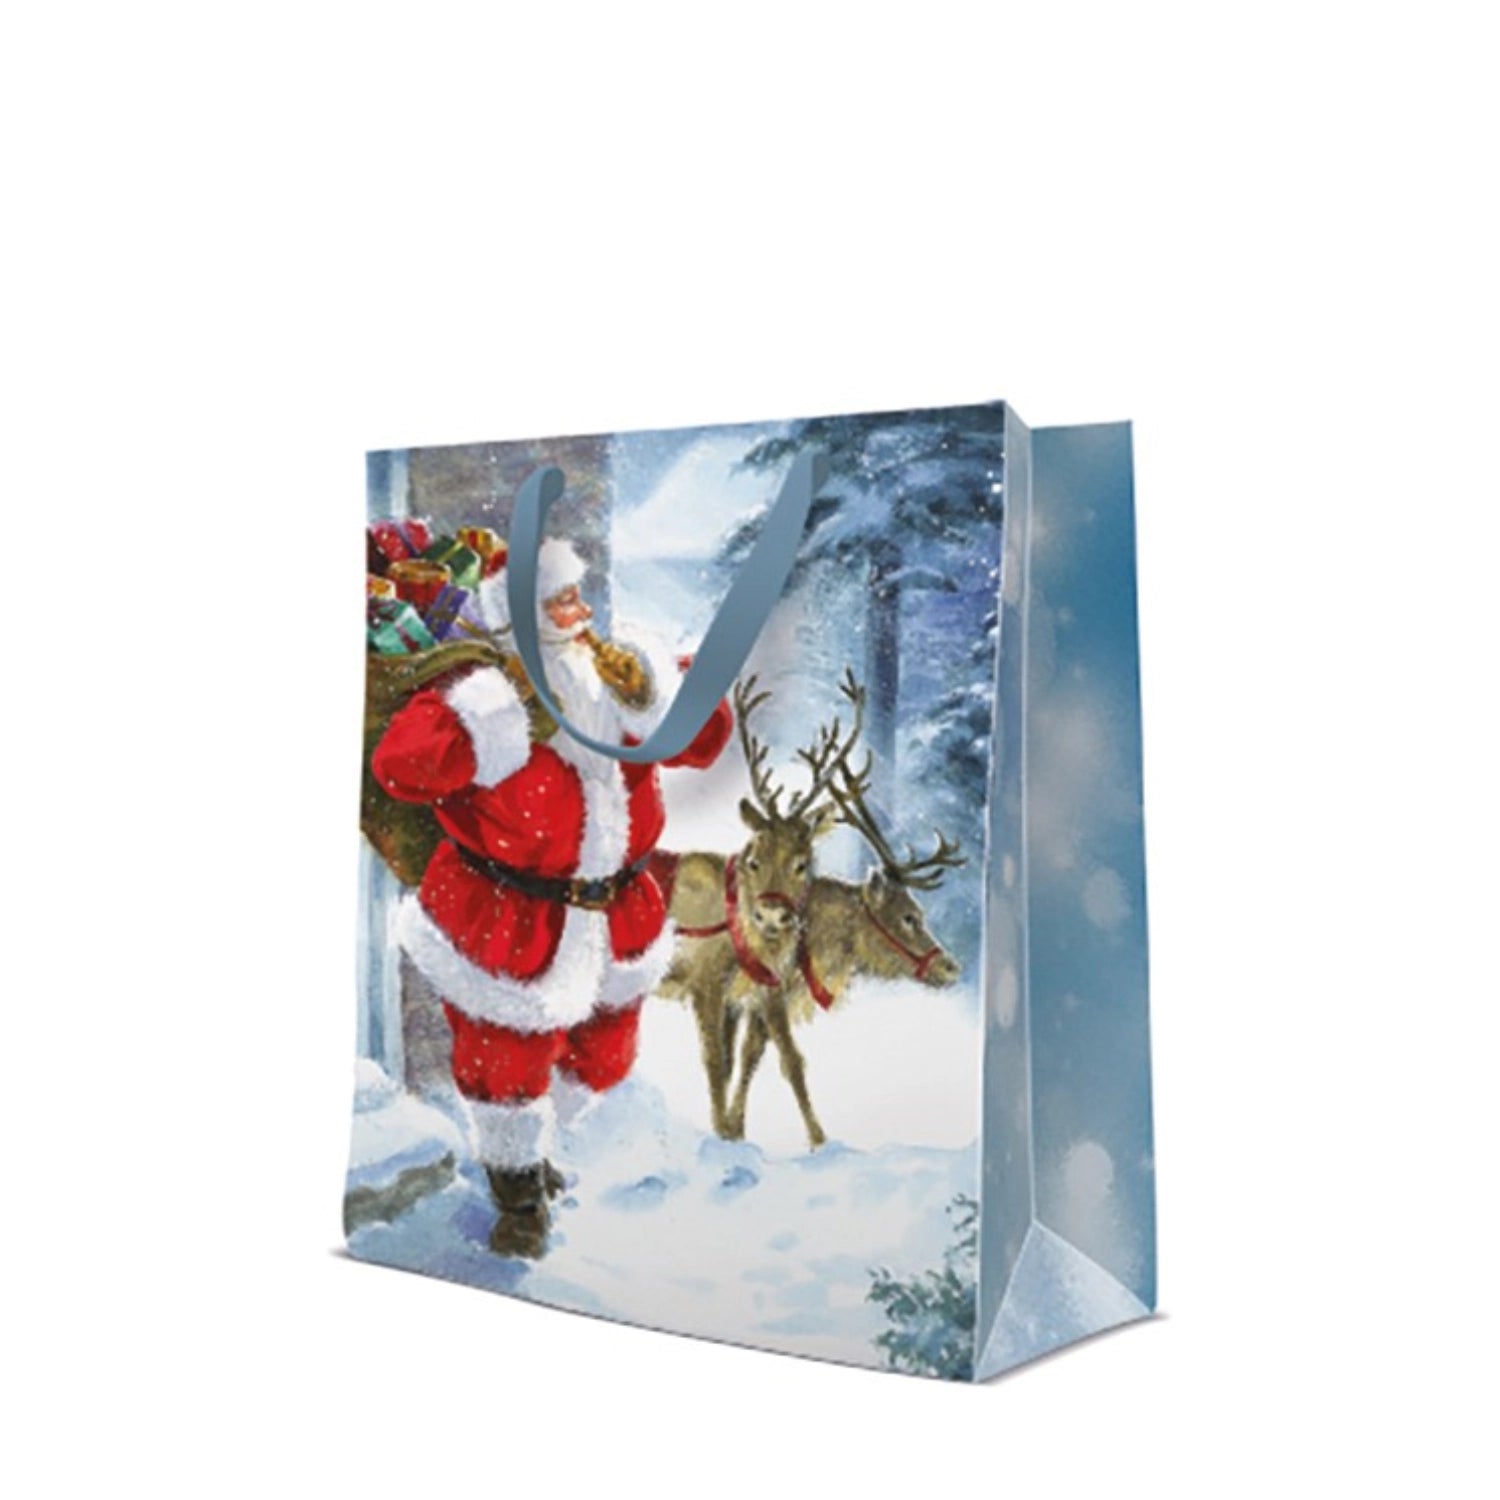 Geschenktüte Santa is coming groß, 33.5x26.5x13 cm